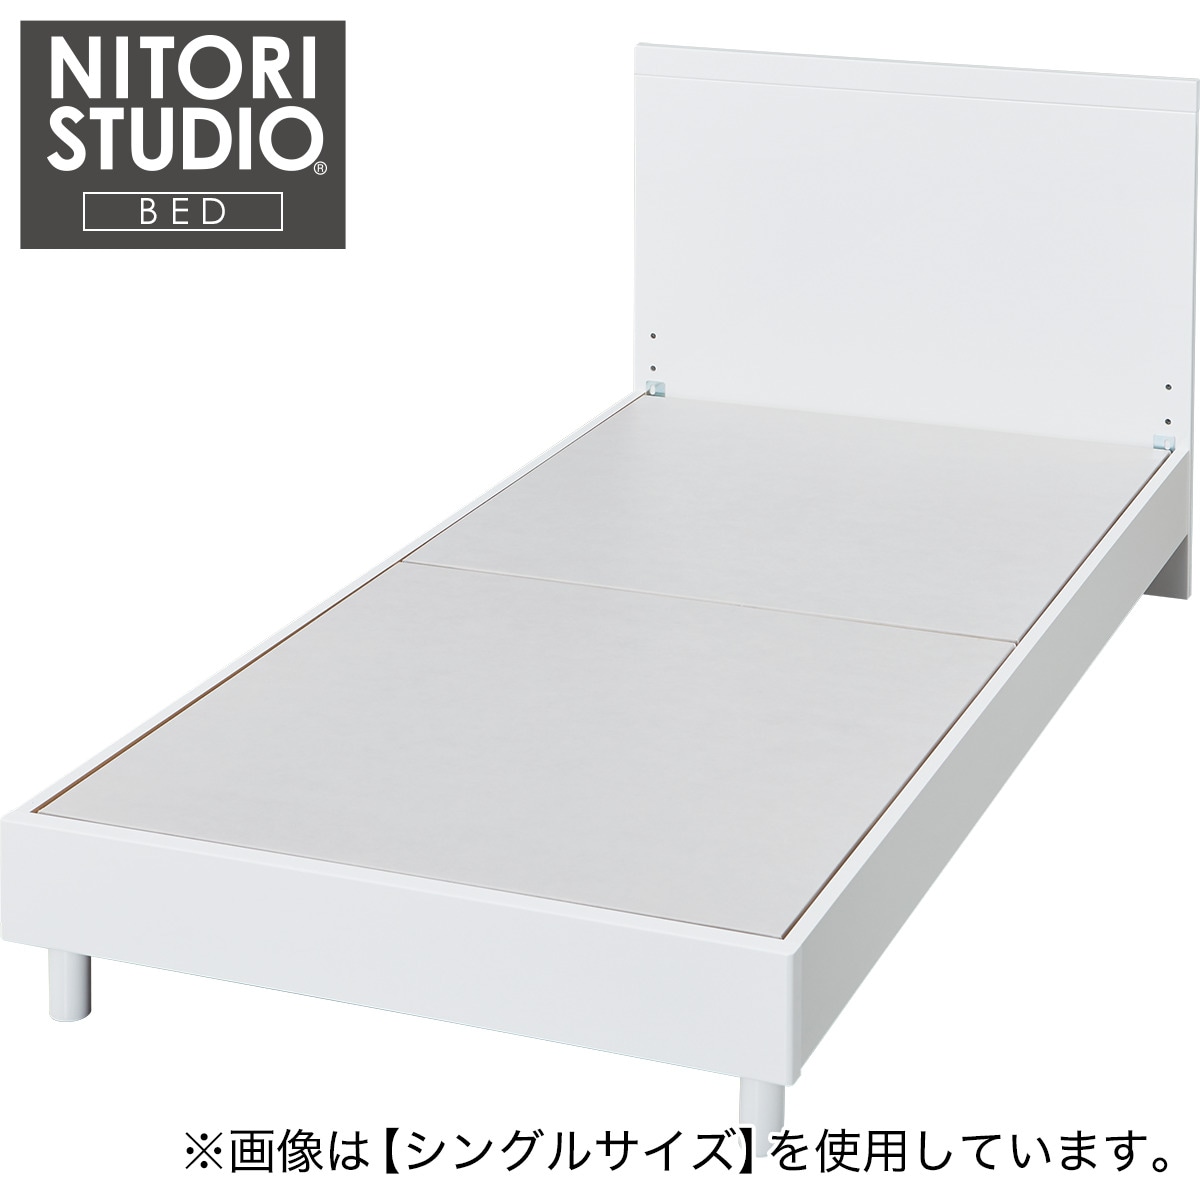 セミダブルベッドフレーム(NS-001 WH LEG/LOW 床板)通販 | ニトリ 